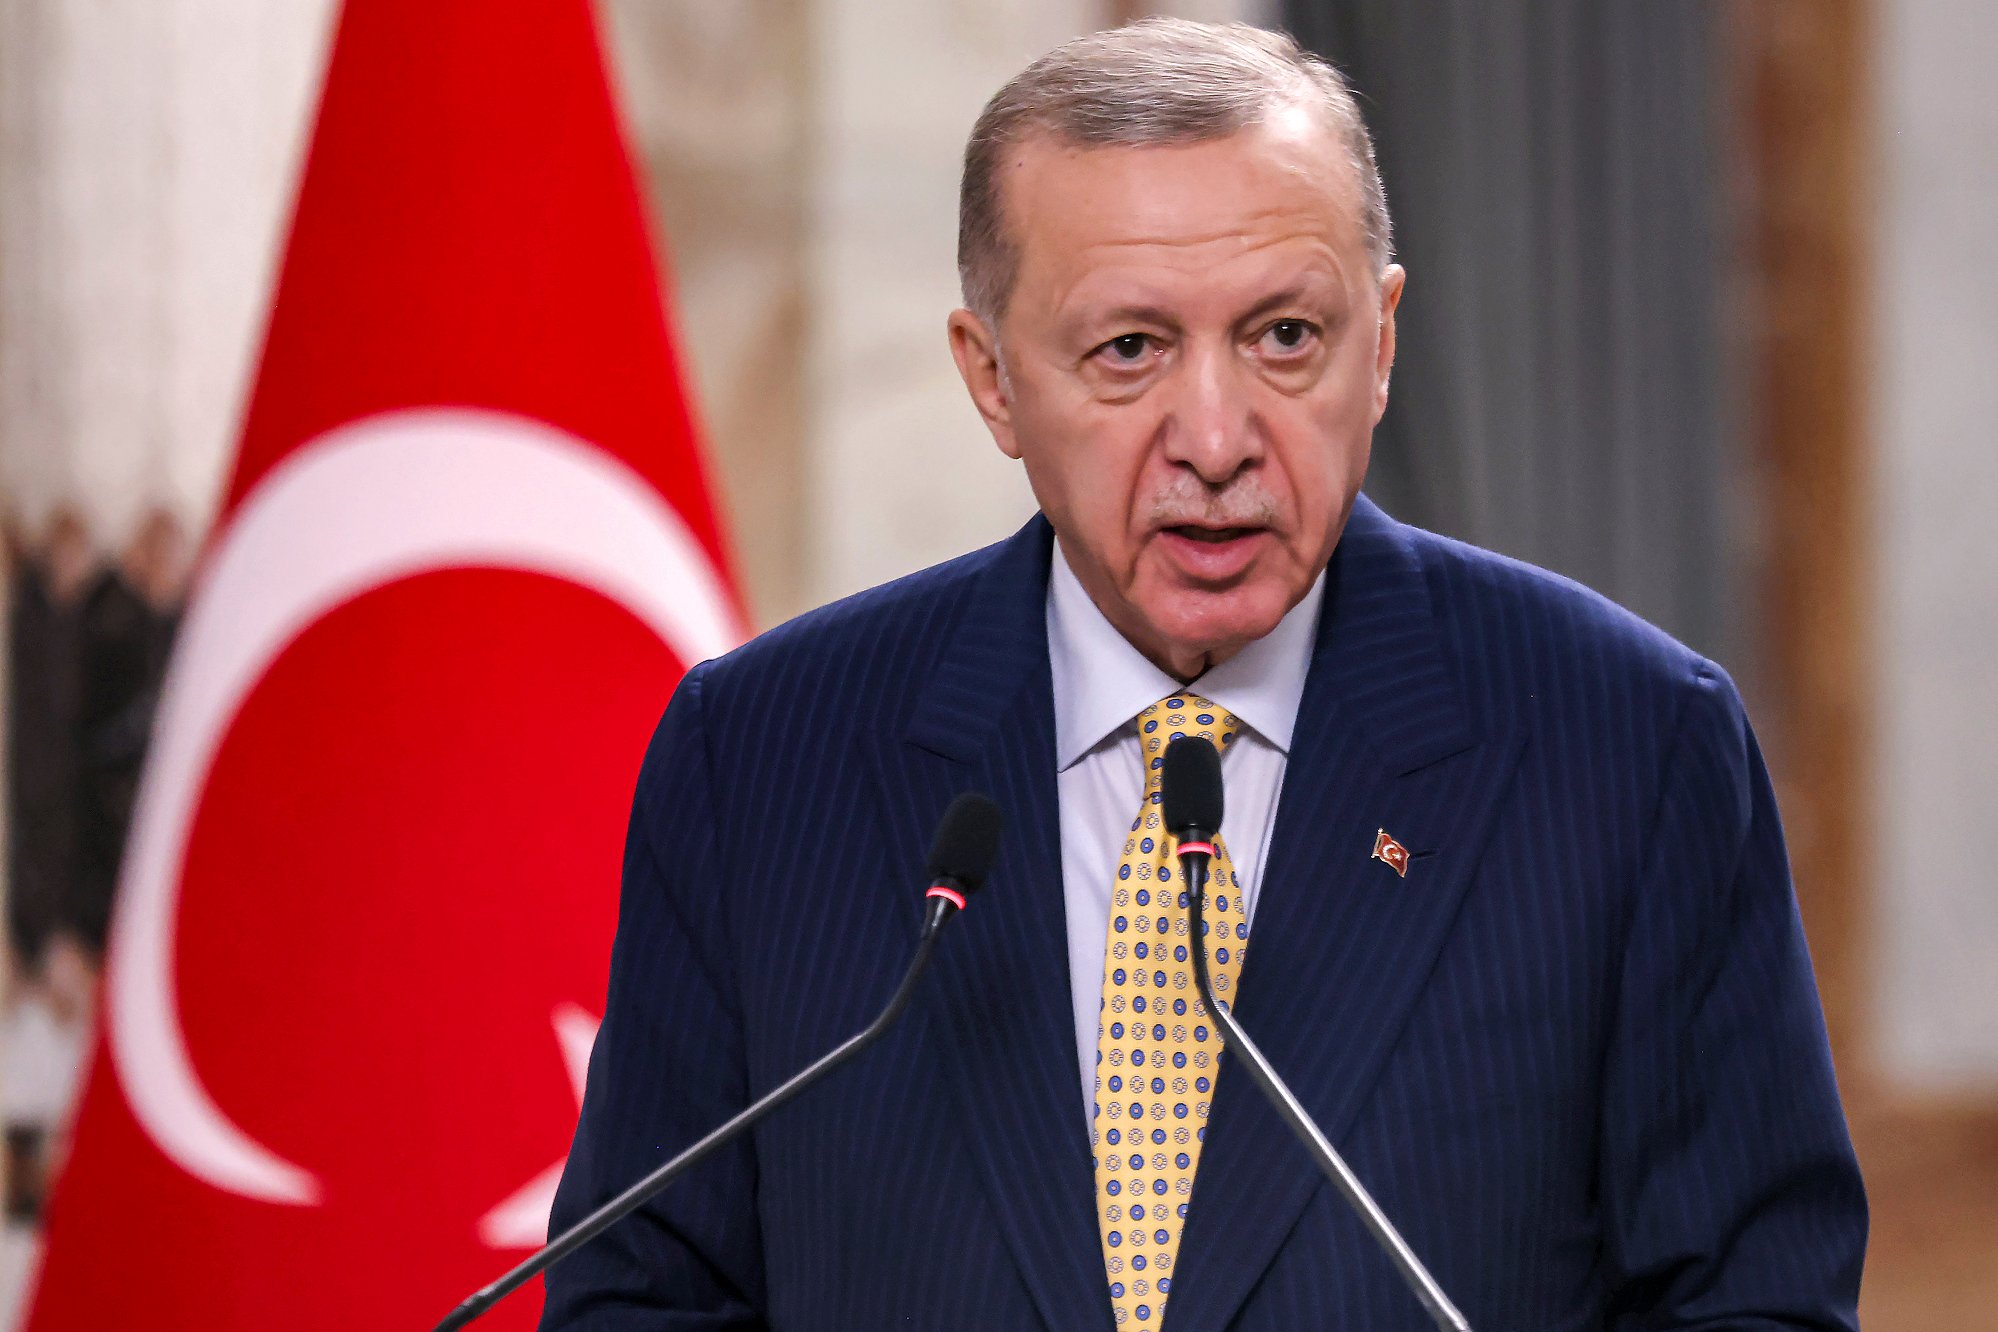 bloomberg news: tyrkia stanser all handel med israel